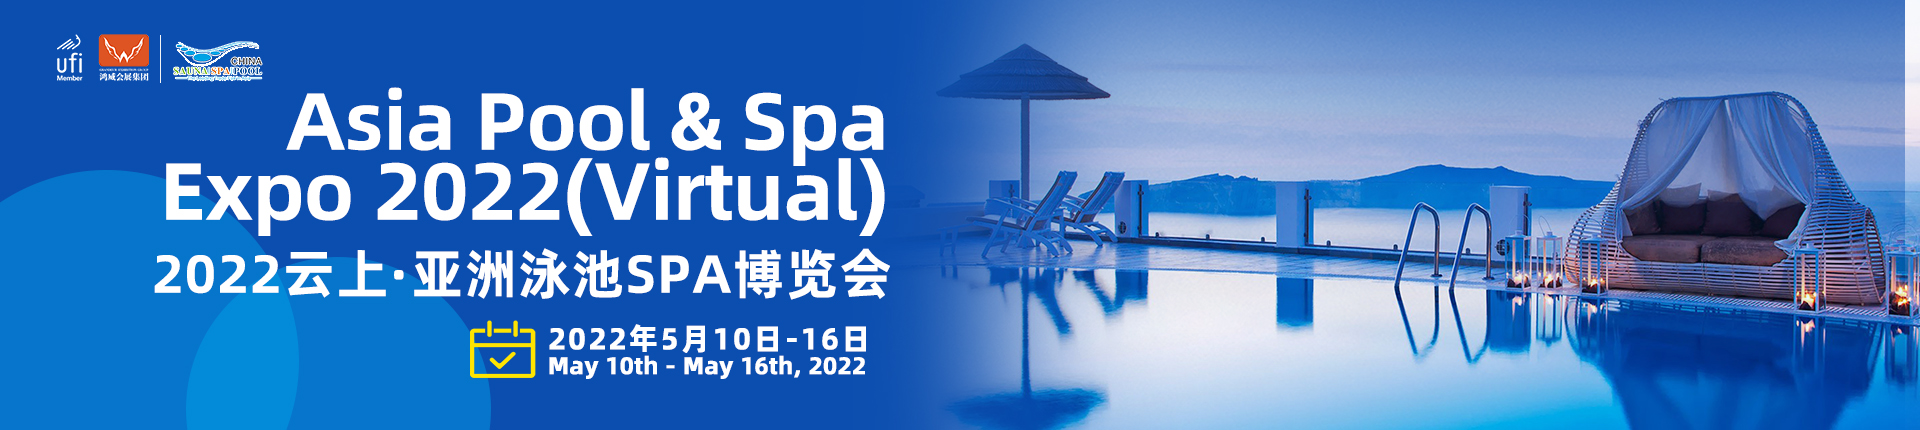 ASIA POOL & SPA EXPO 2022(Virtual)